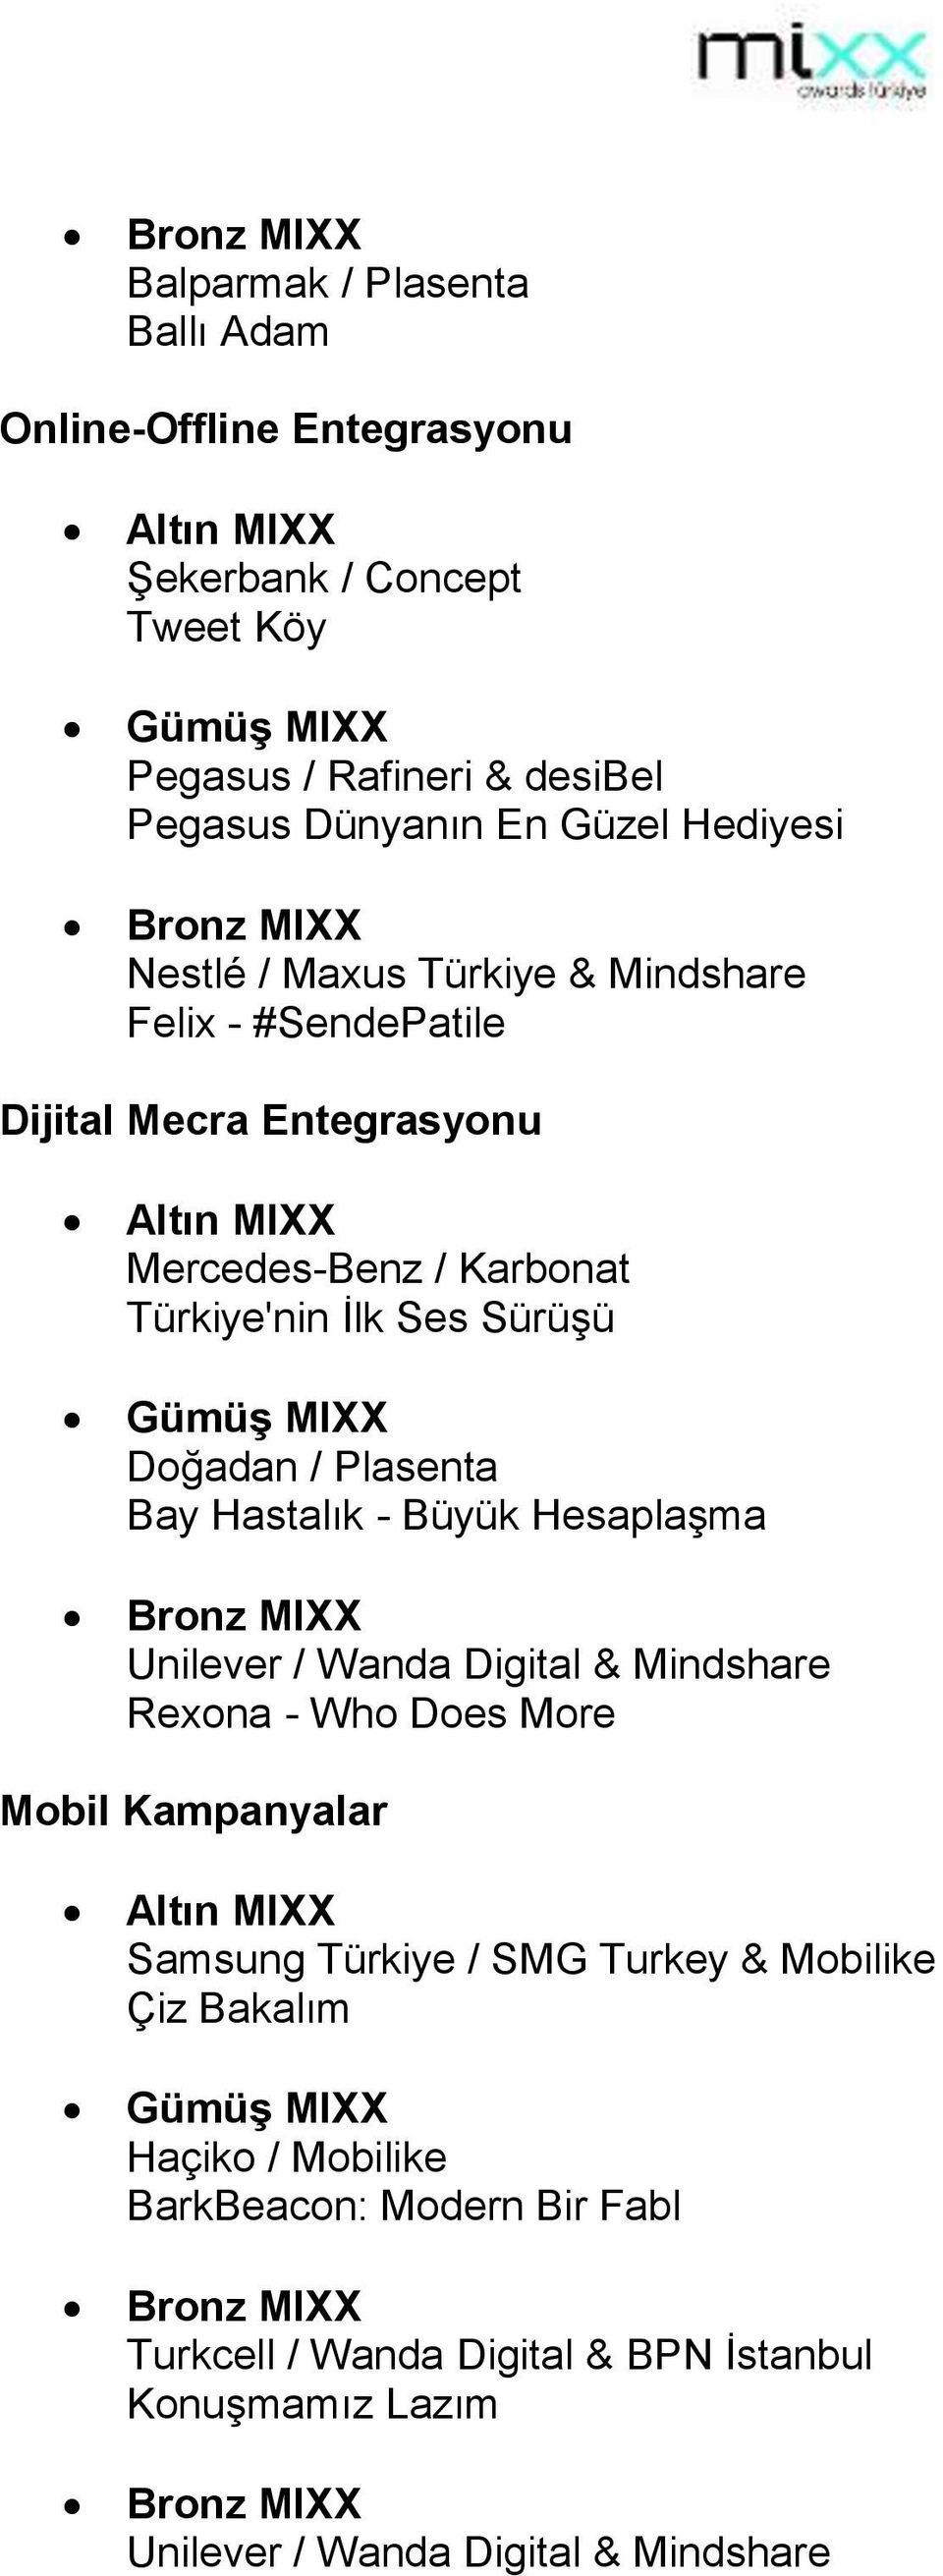 / Plasenta Bay Hastalık - Büyük Hesaplaşma Unilever / Wanda Digital & Mindshare Rexona - Who Does More Mobil Kampanyalar Samsung Türkiye / SMG Turkey &